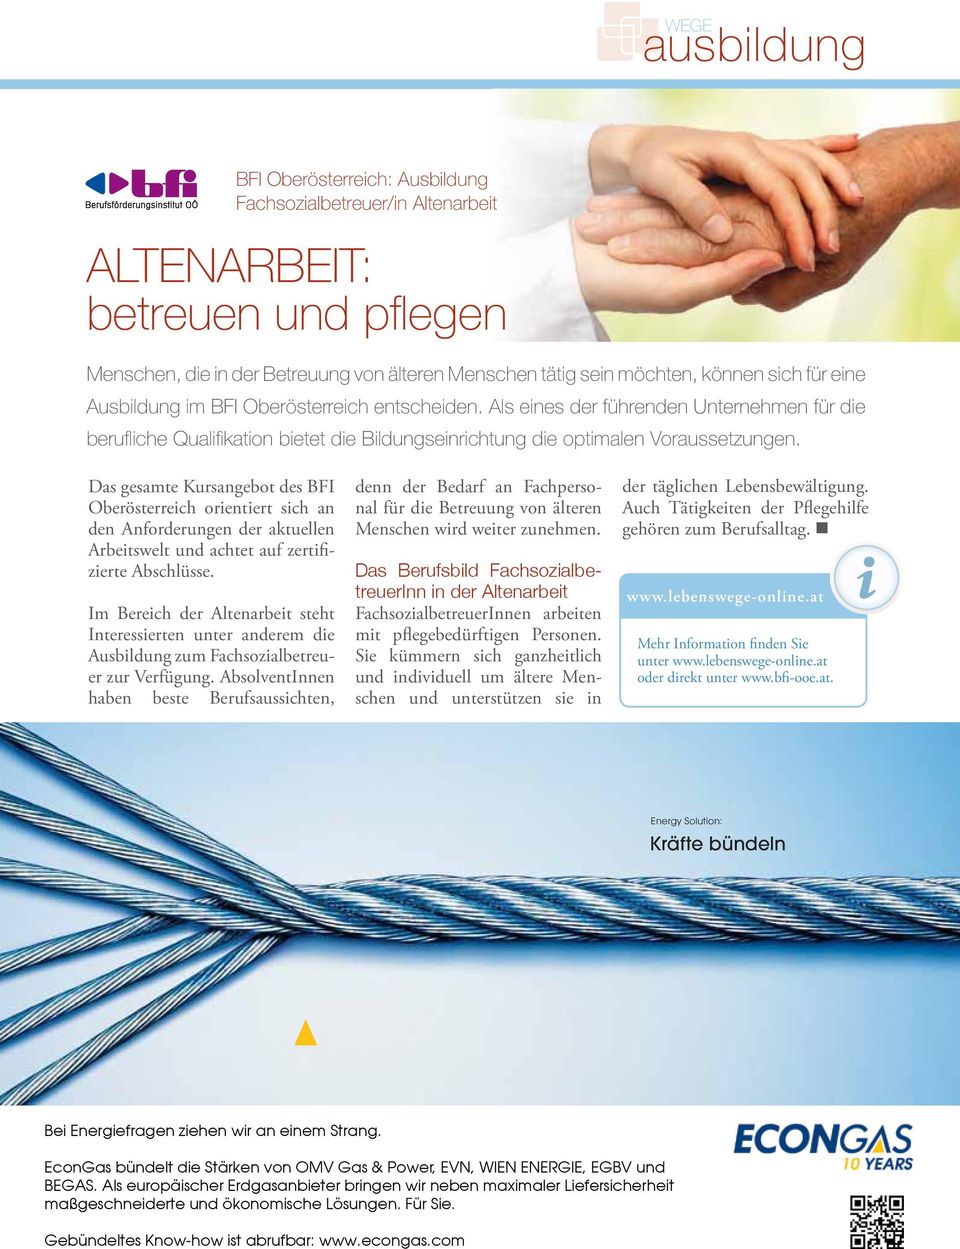 Das gesamte Kursangebot des BFI Oberösterreich orientiert sich an den Anforderungen der aktuellen Arbeitswelt und achtet auf zertifizierte Abschlüsse.